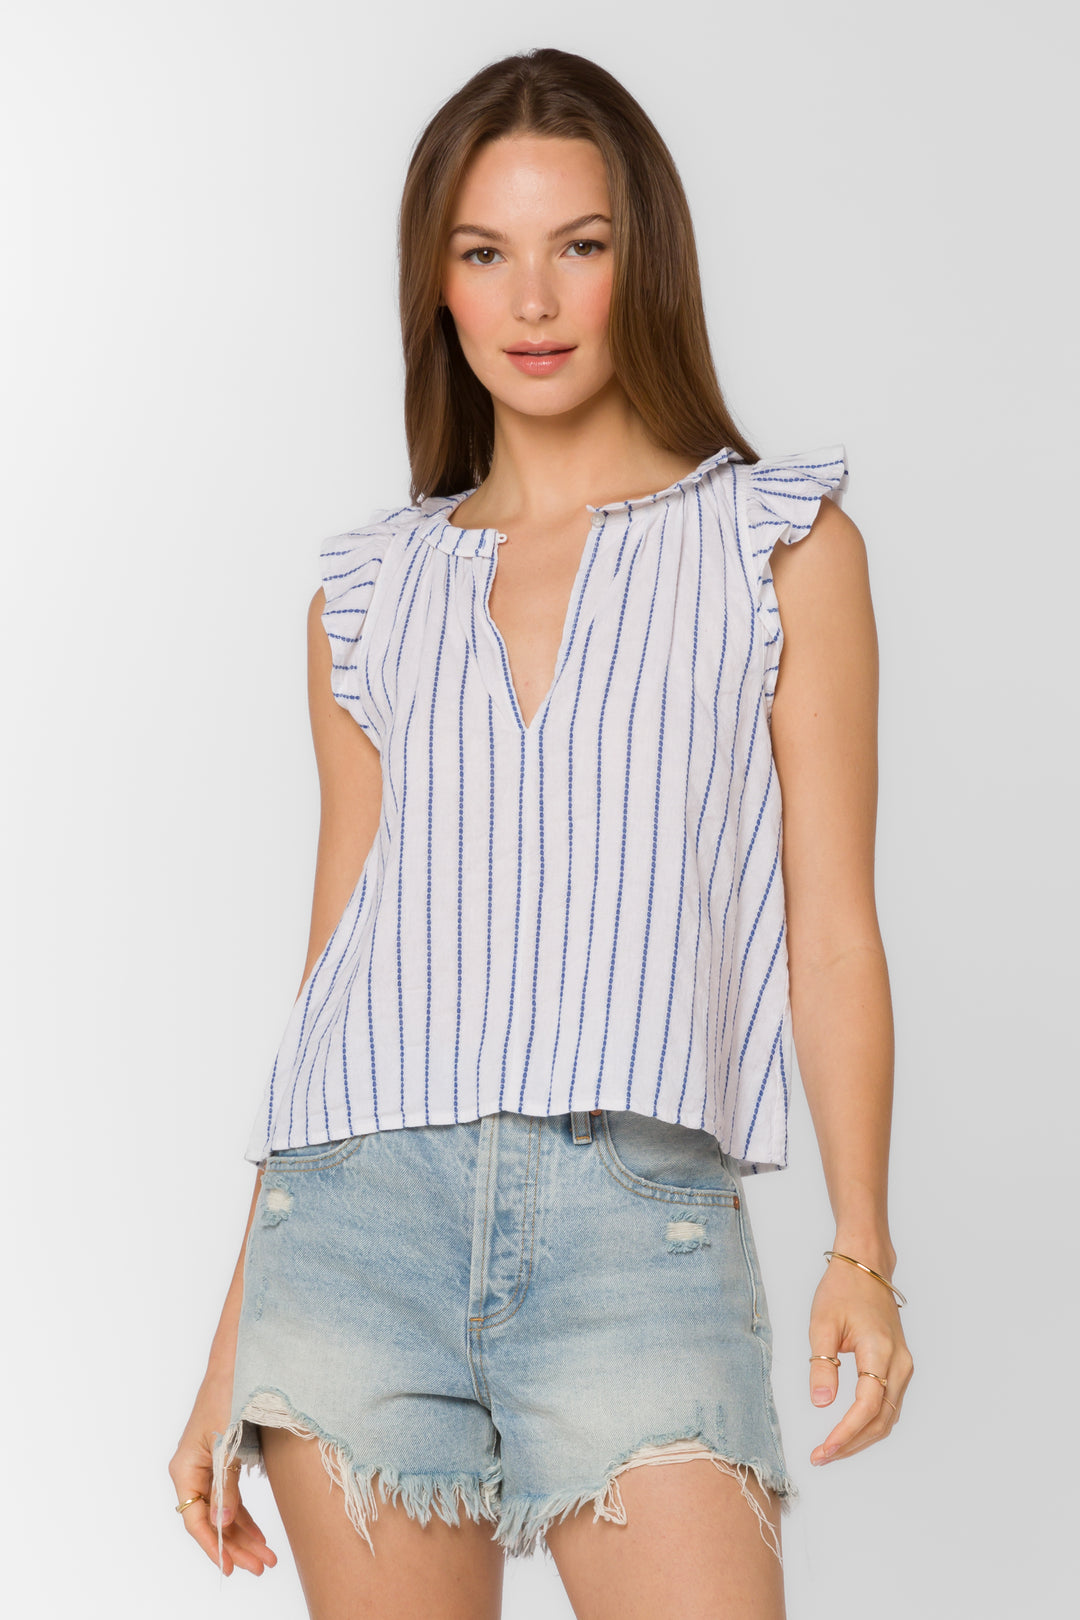 Nazira Blue White Jacquard Stripe Top - Tops - Velvet Heart Clothing